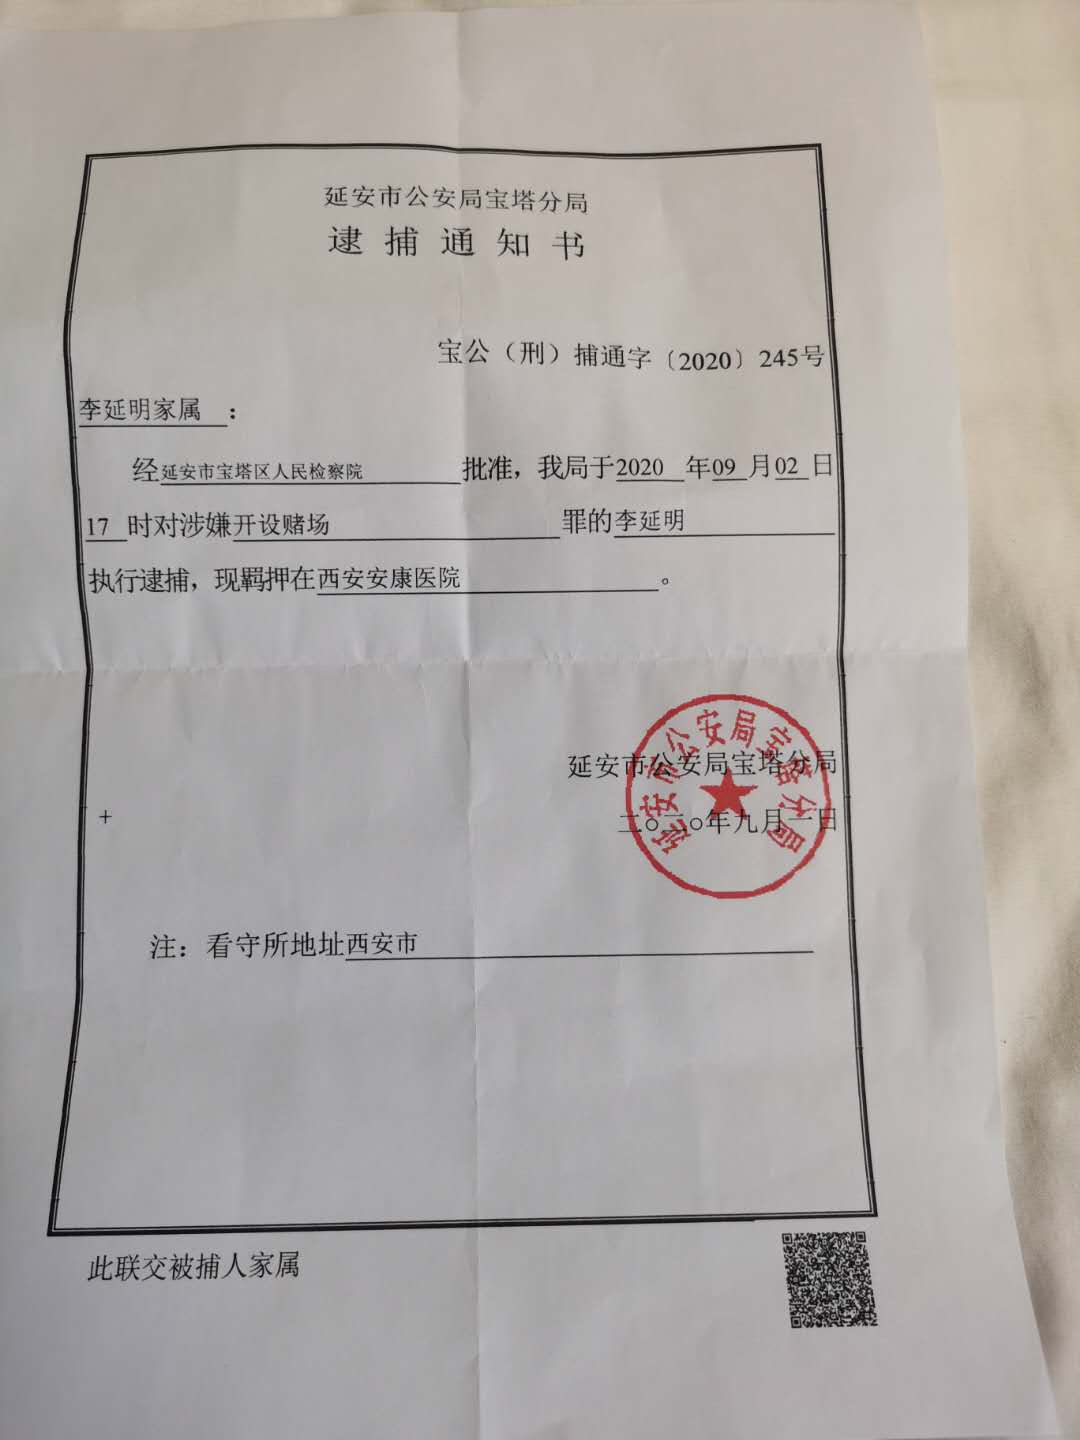 延安市公安局宝塔分局给李延明家属送达的逮捕通知书显示,经延安市